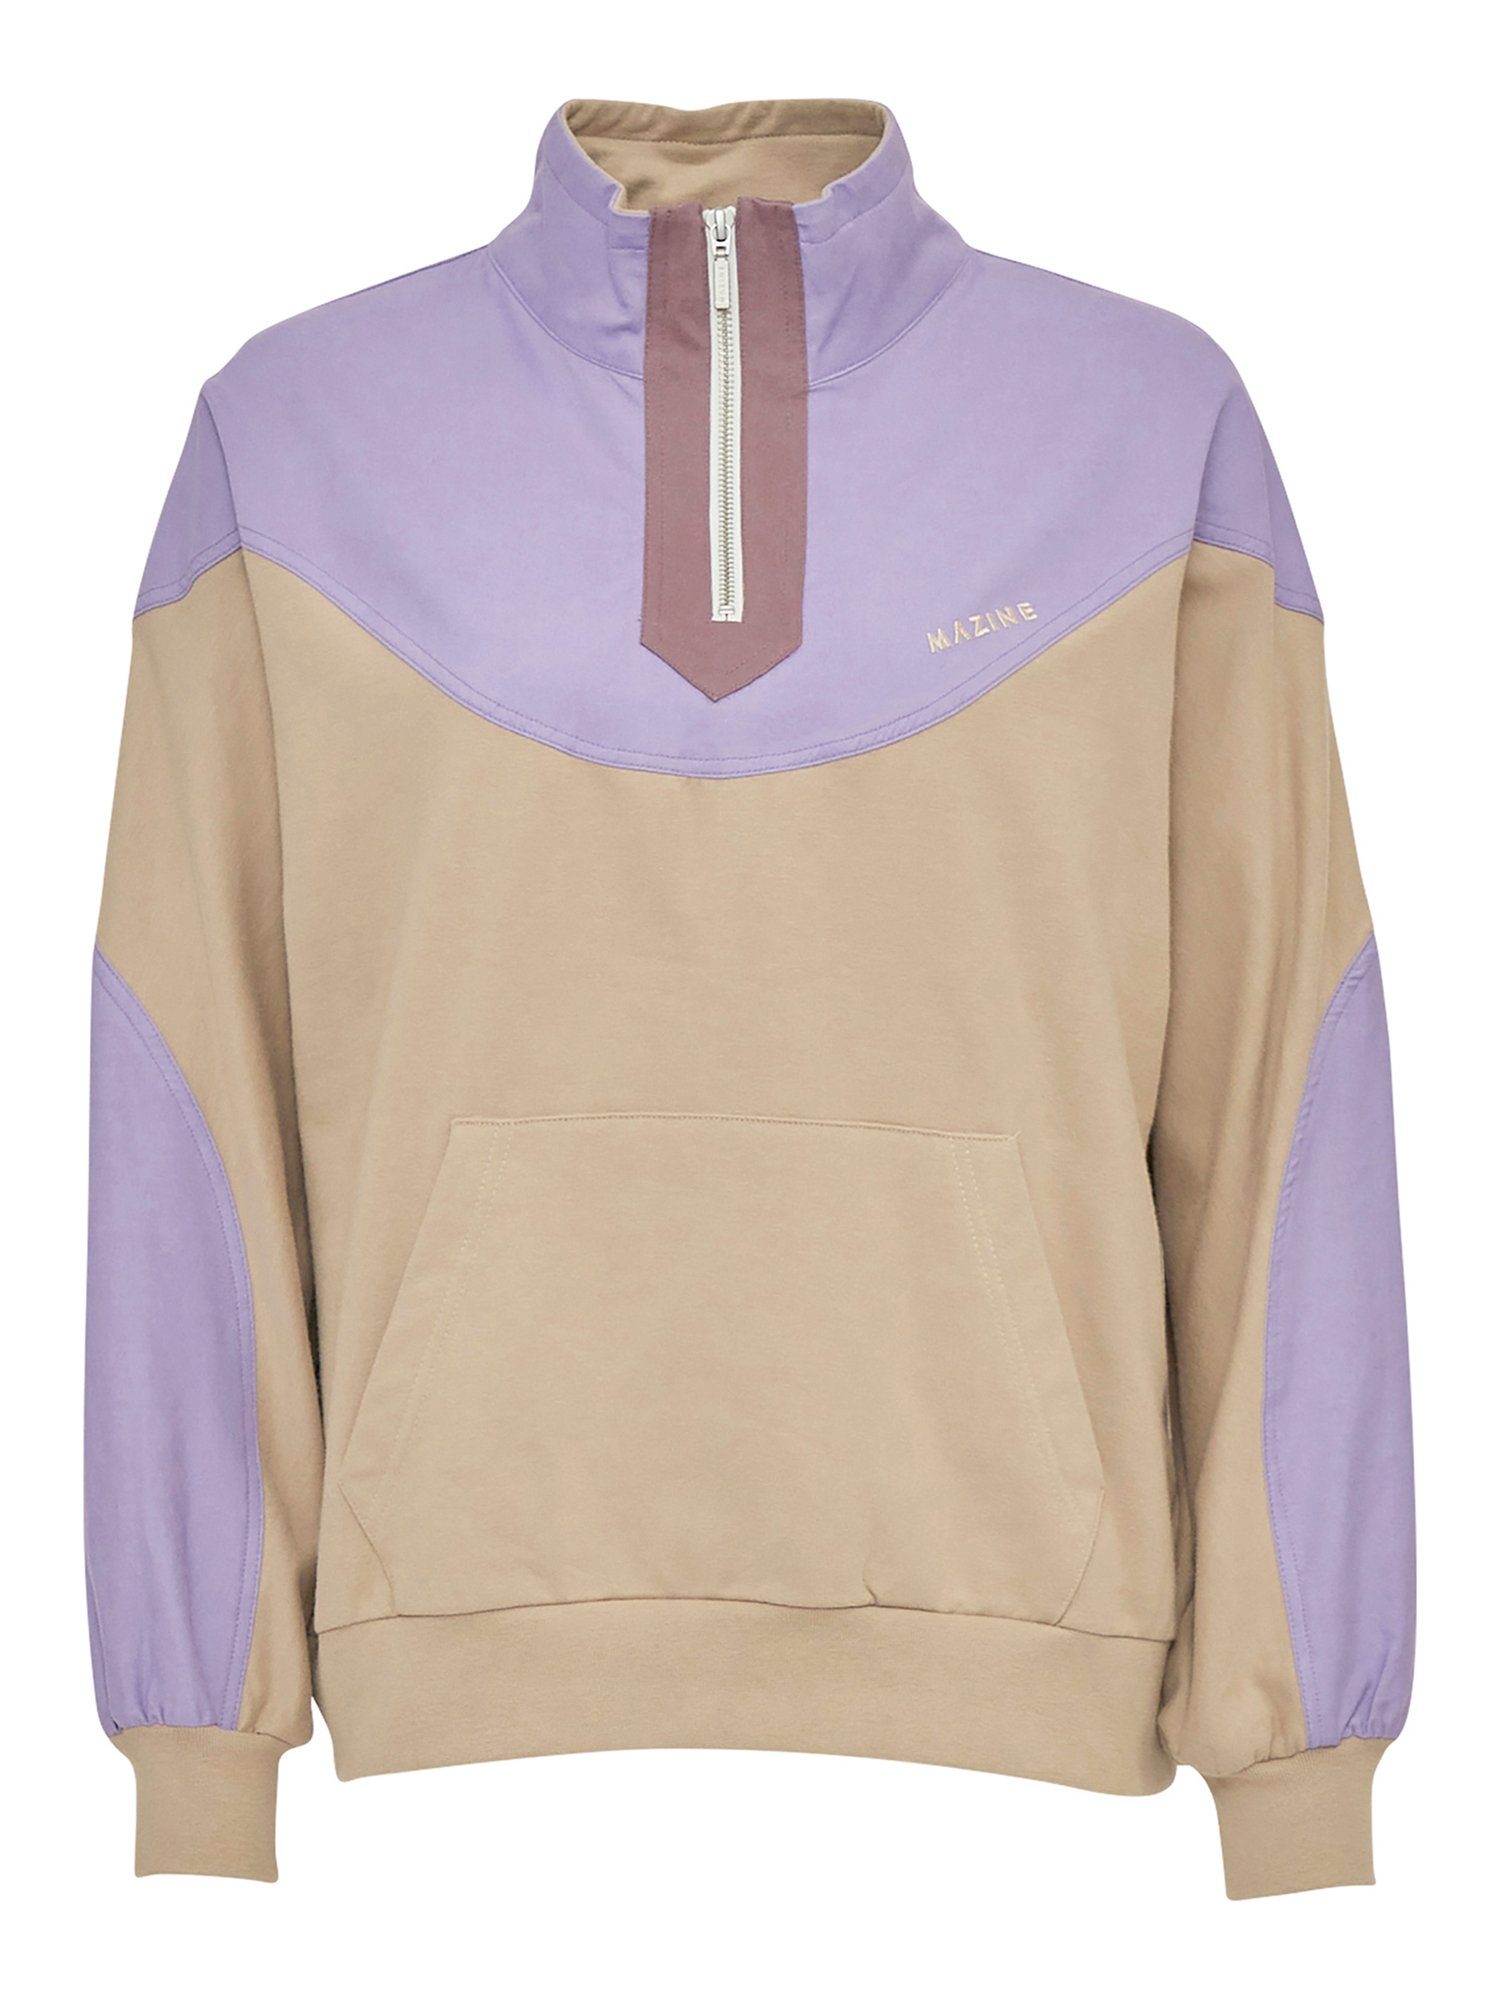 MAZINE Sweatshirt Vera Half Zip sportlich gemütlich purple haze/light taupe